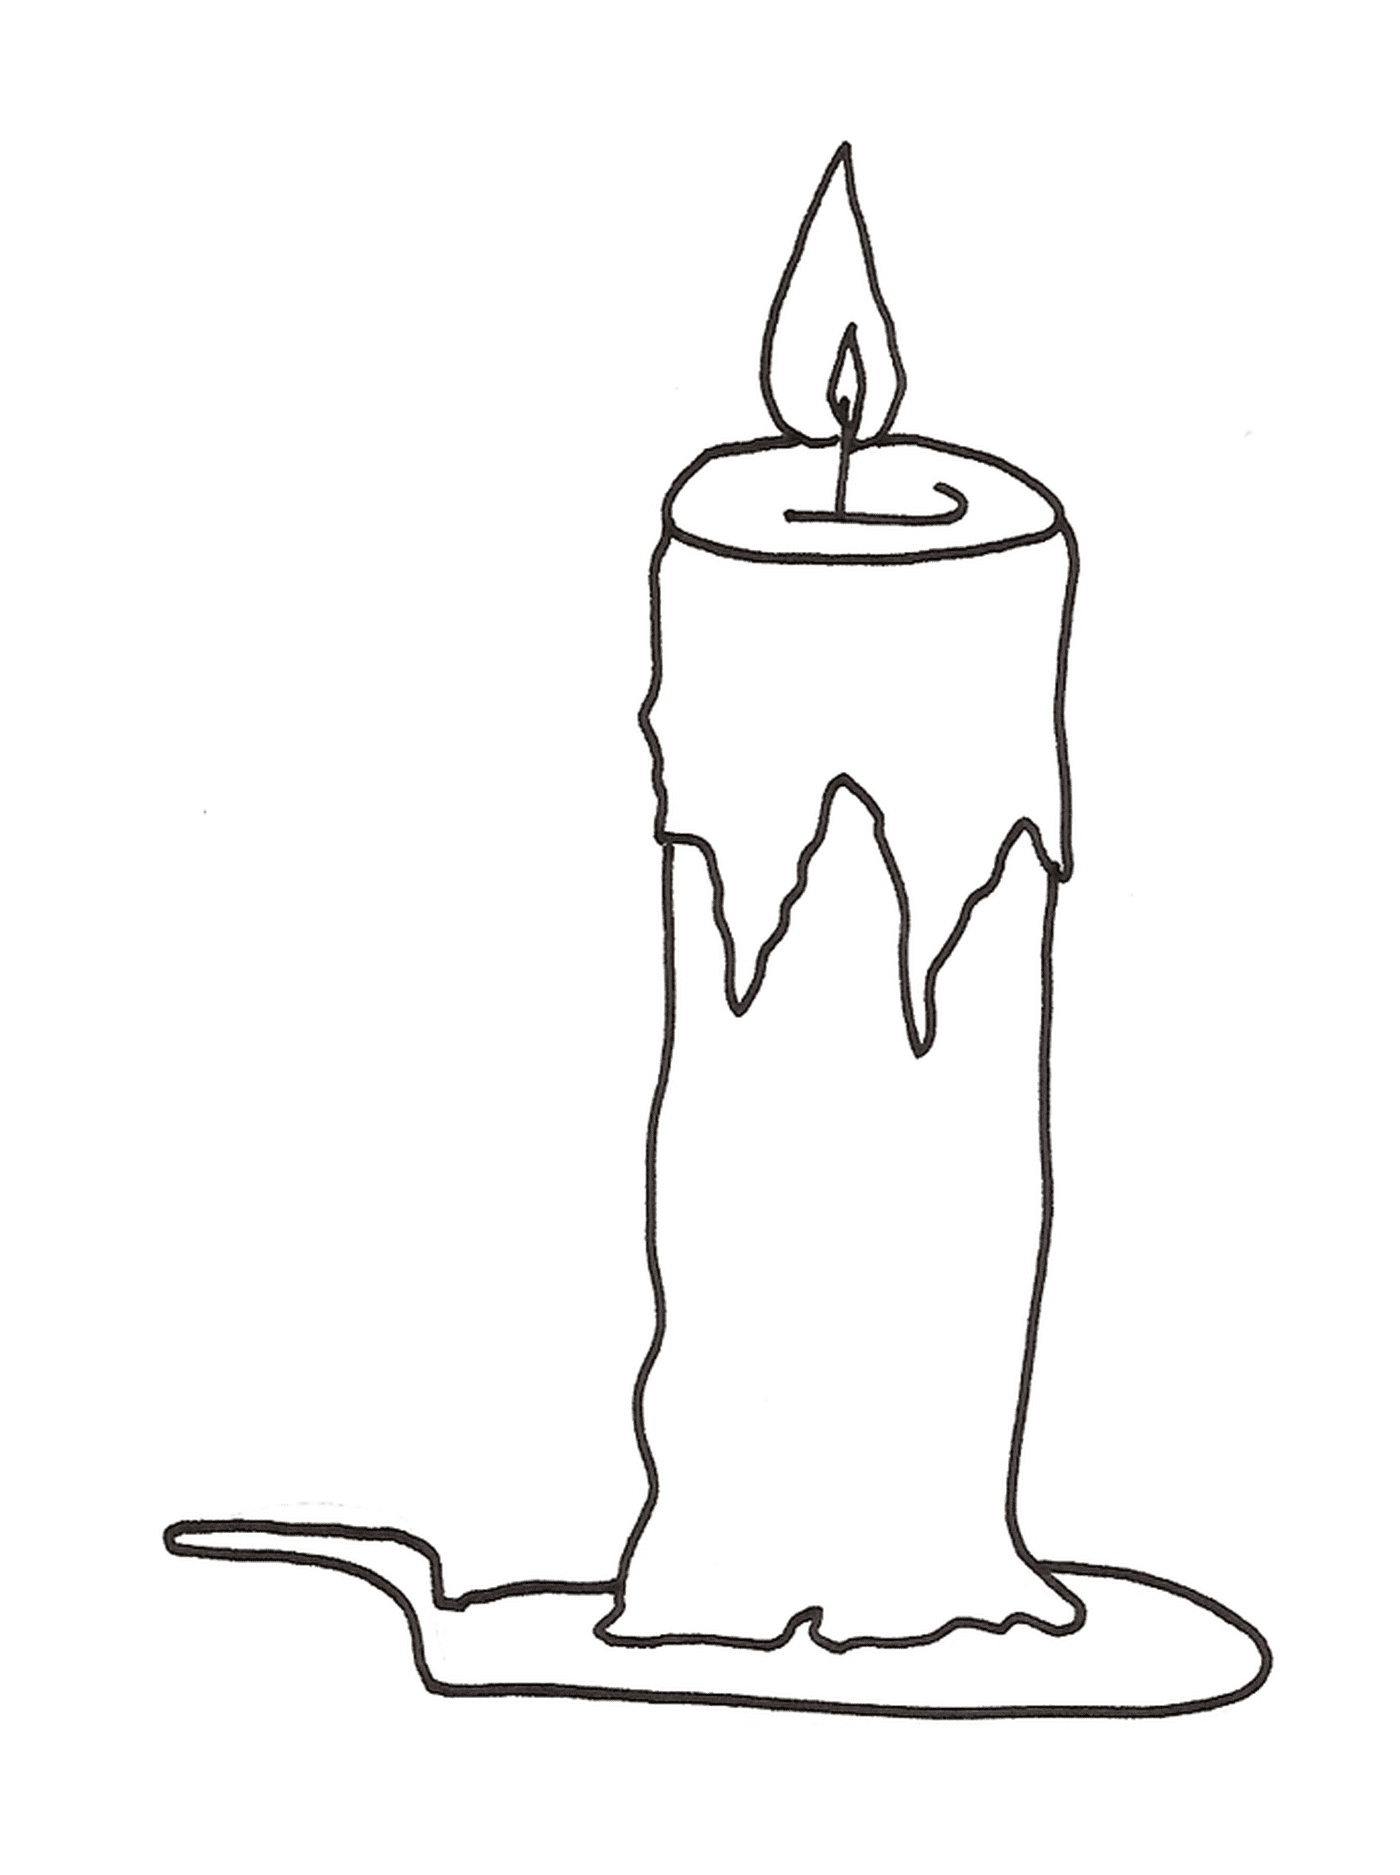  Uma vela de Natal projetada 